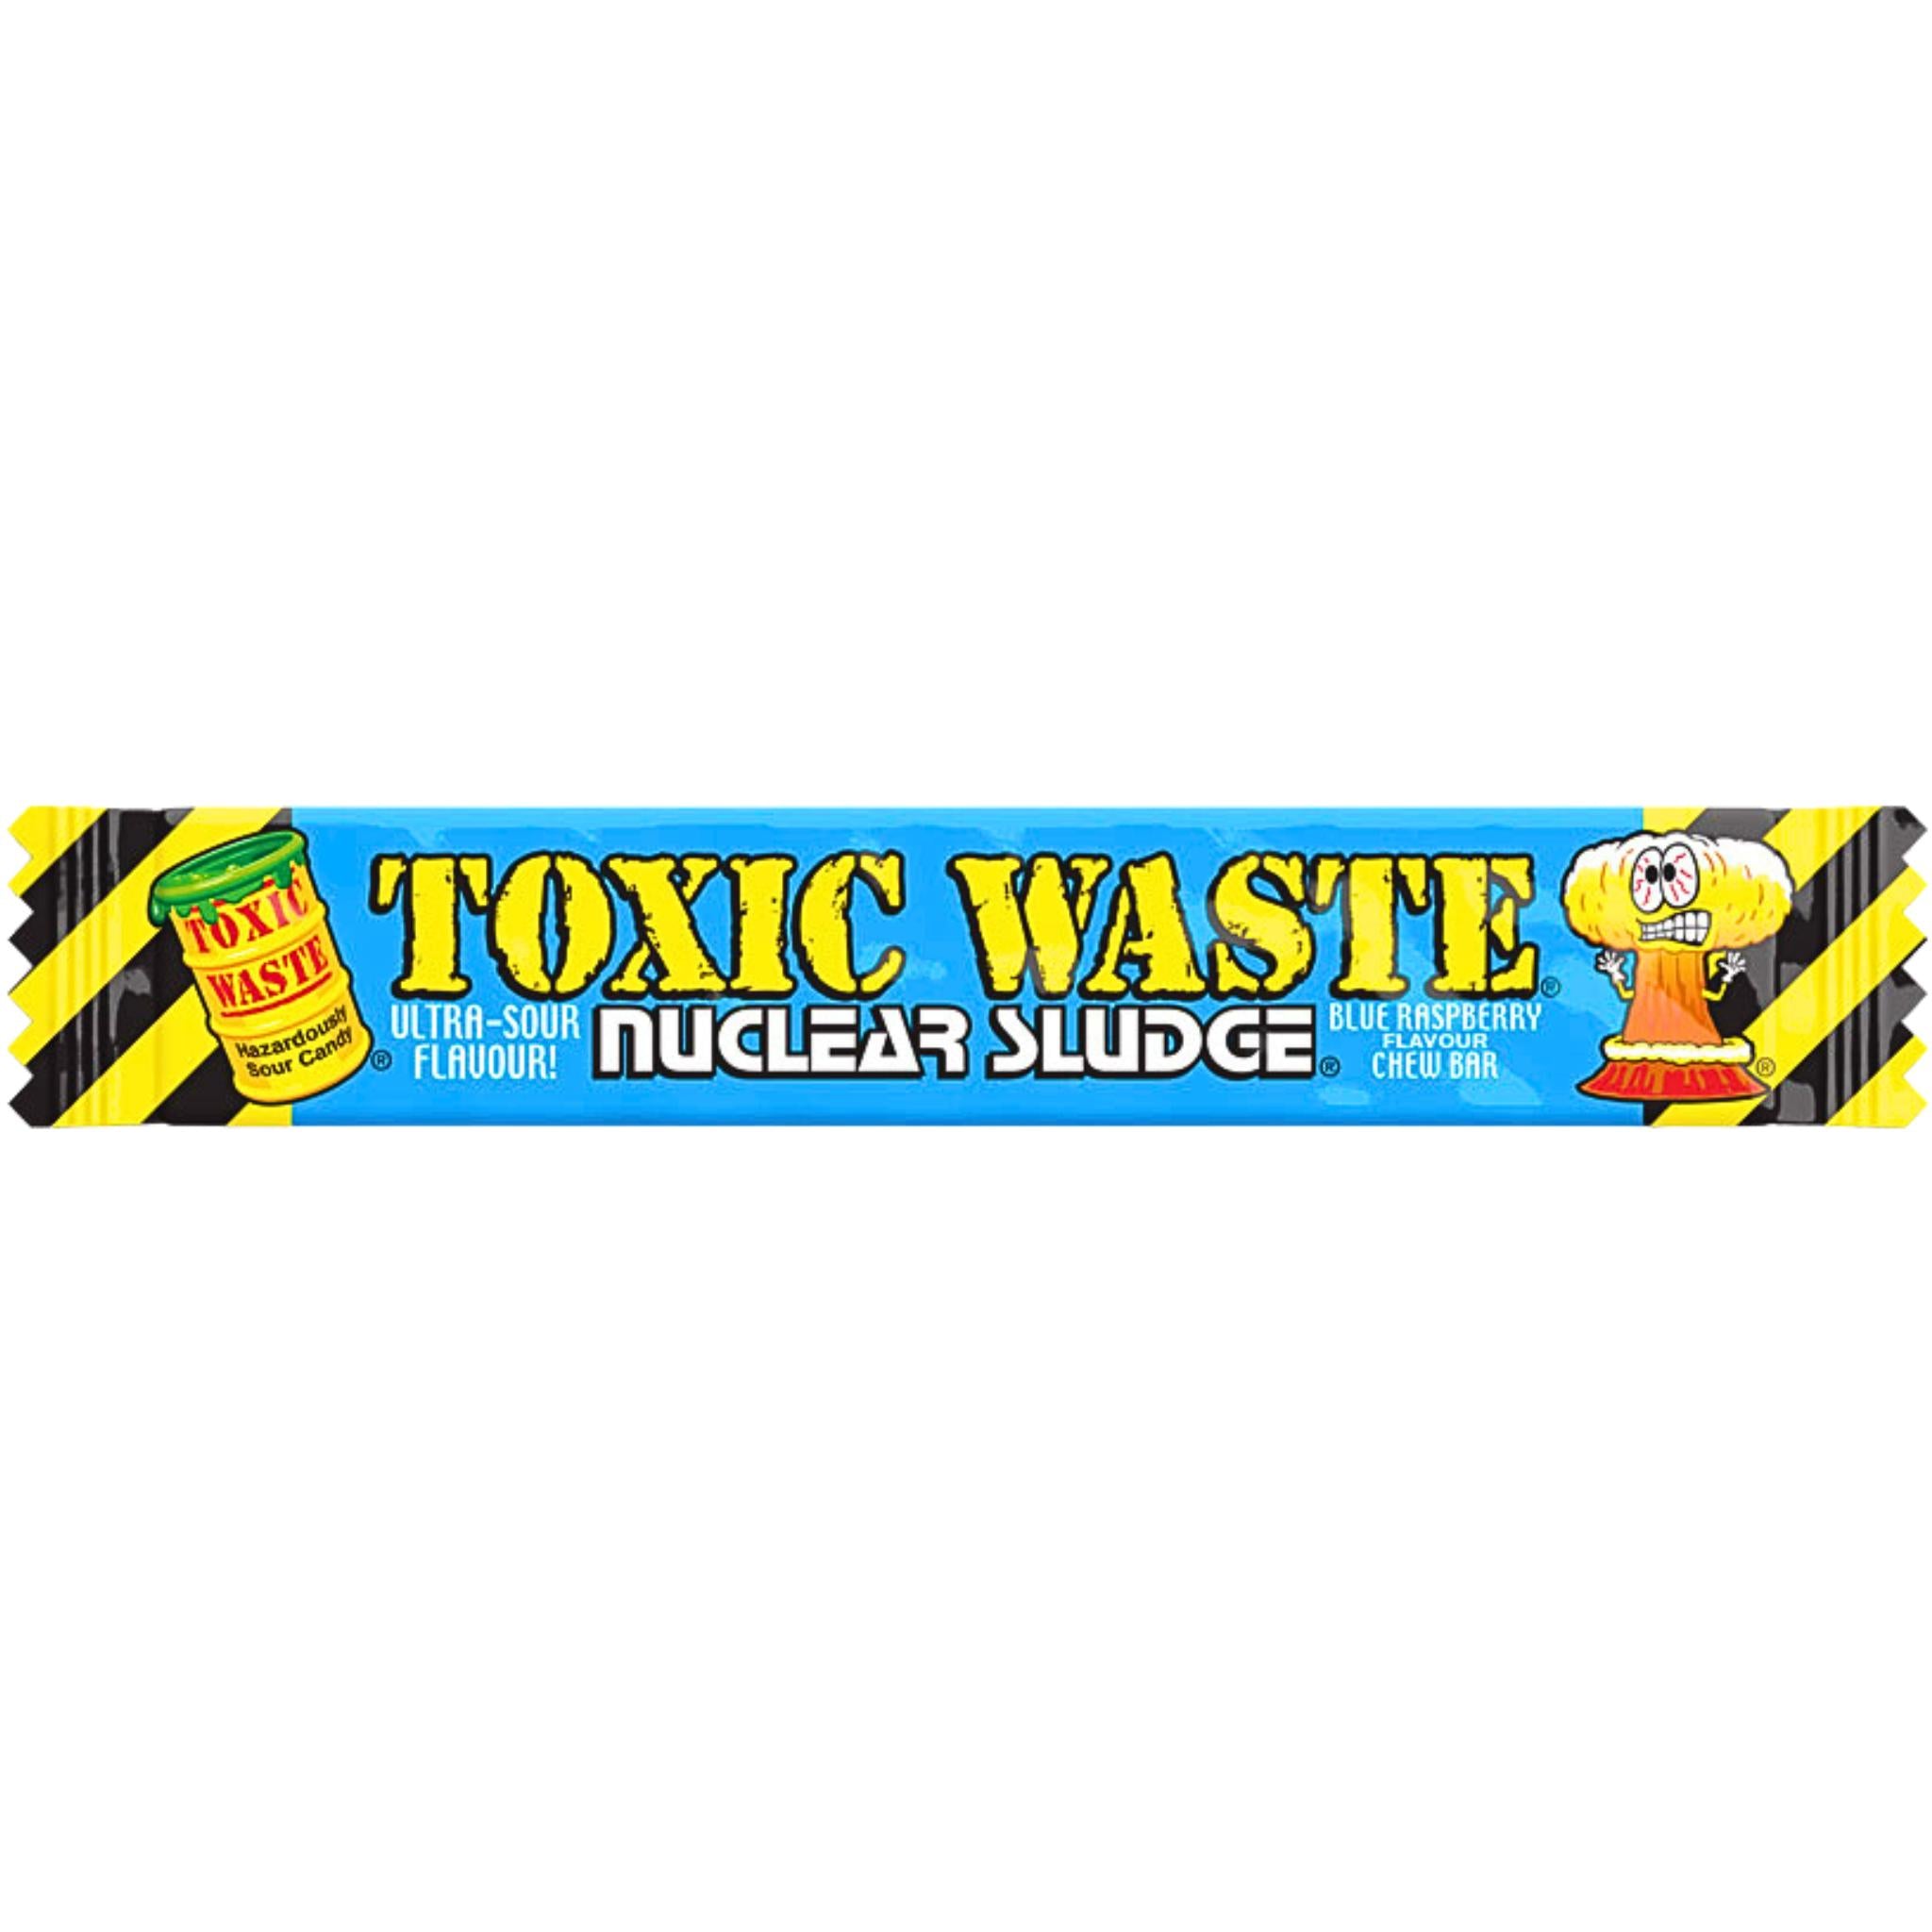 Toxic Waste Nuclear Sludge Blue Raspberry Chew Bar - 20g